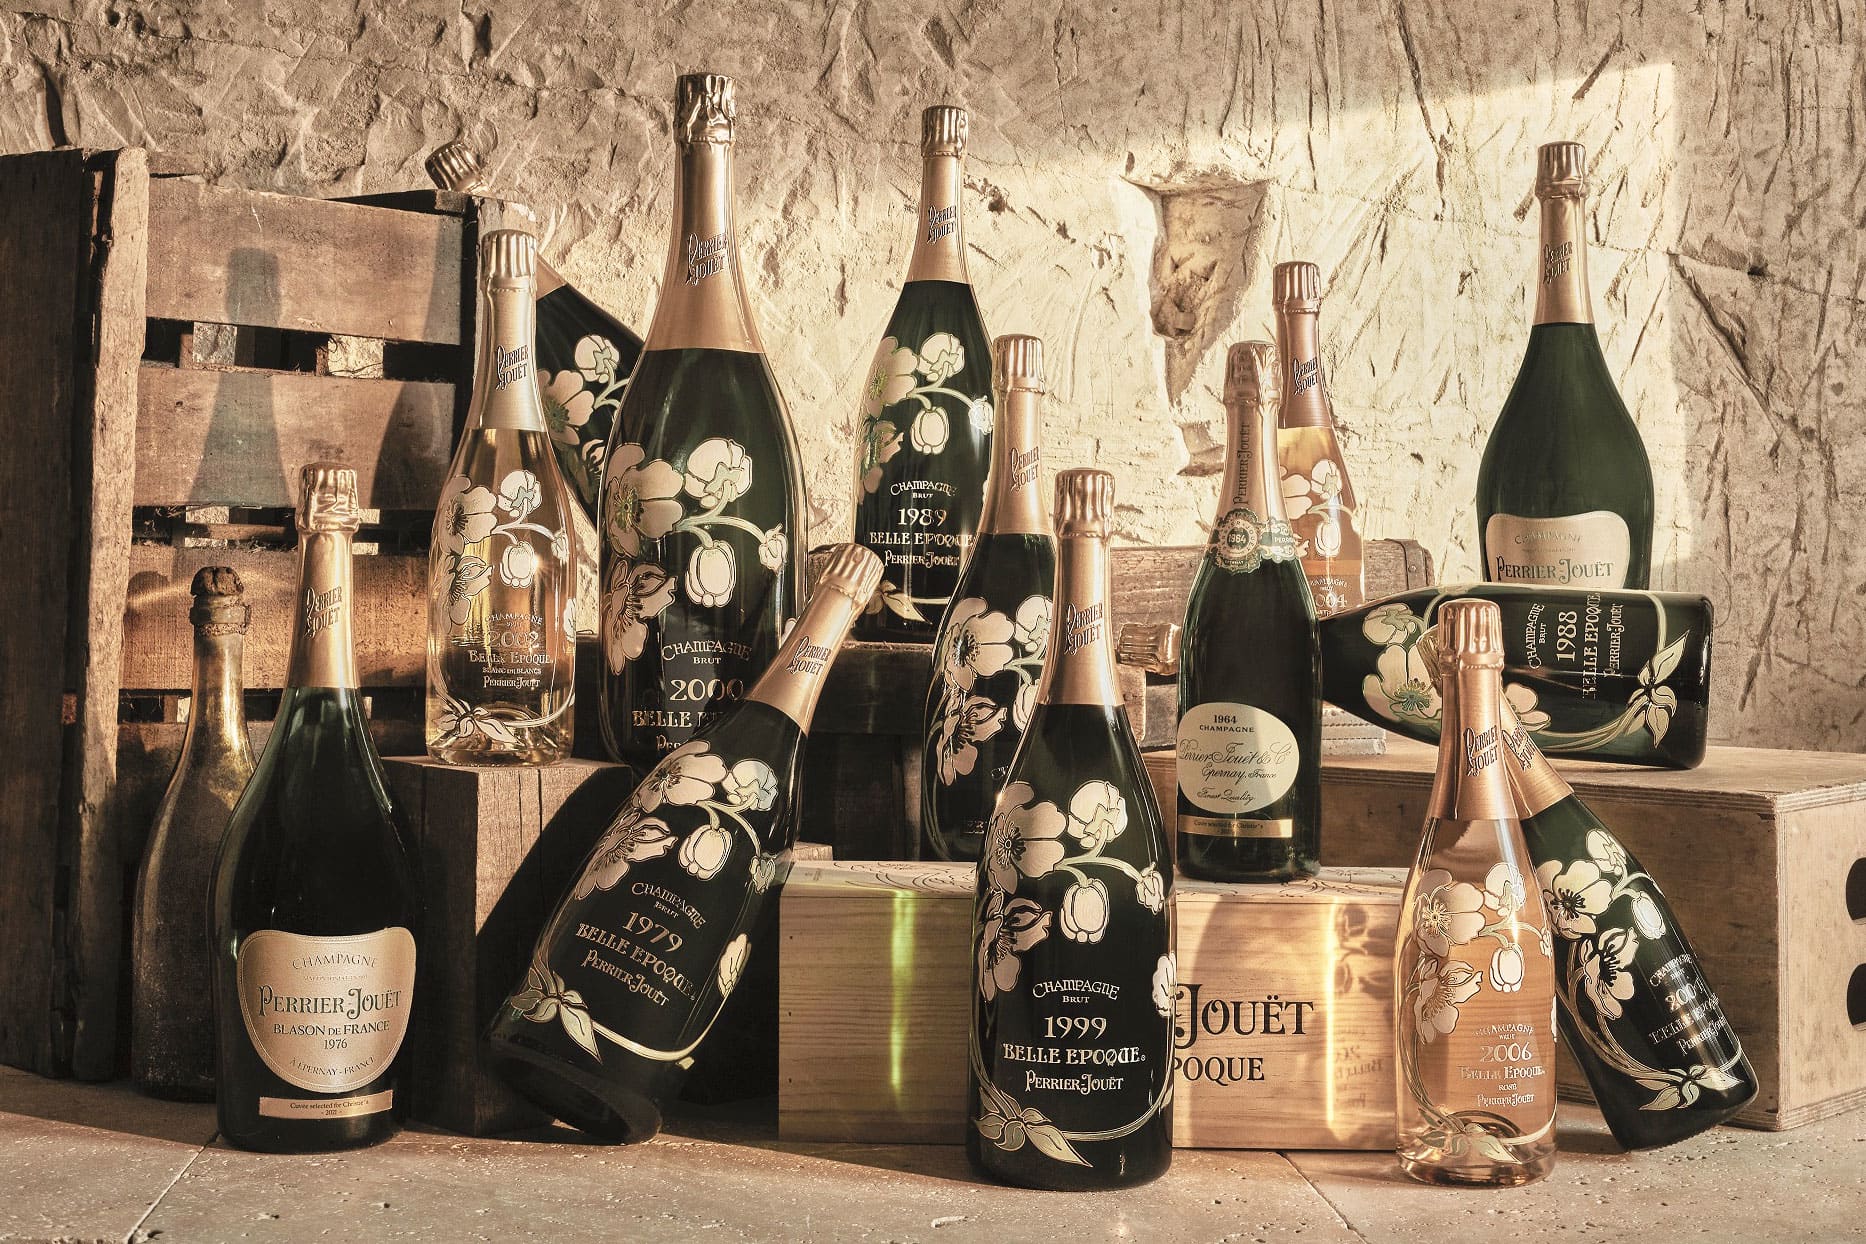 Une bouteille de champagne rare, vieille de 147 ans, sera mise aux enchères chez Christie's cette année - Burzovnisvet.cz - Actions, Bourse, Taux de change, Forex, Matières premières, IPO, Obligations